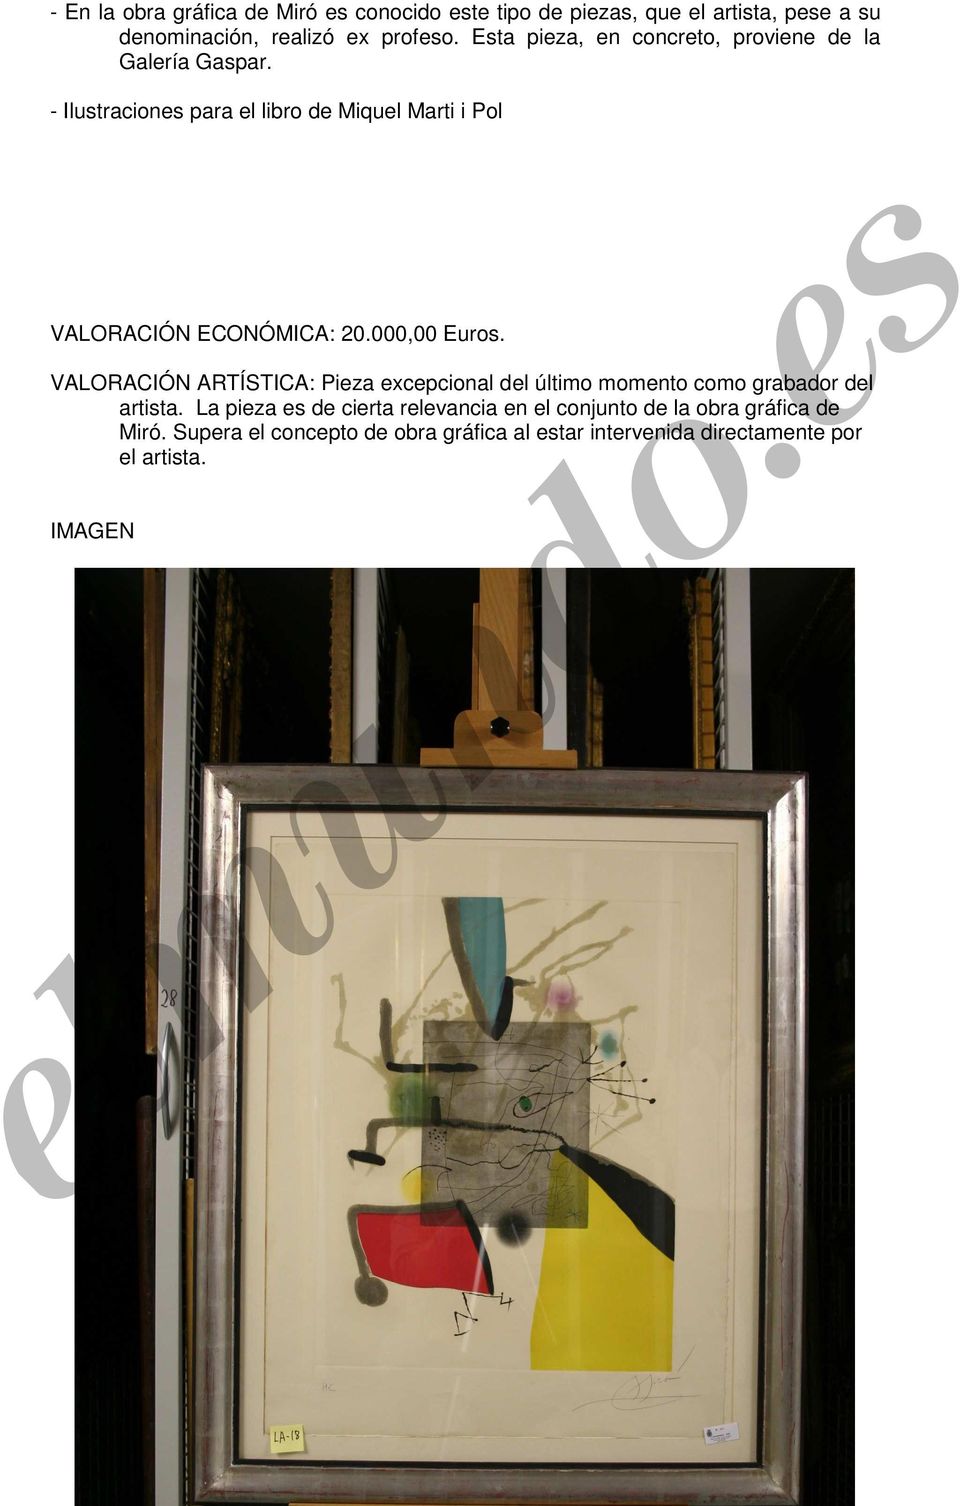 - Ilustraciones para el libro de Miquel Marti i Pol VALORACIÓN ECONÓMICA: 20.000,00 Euros.